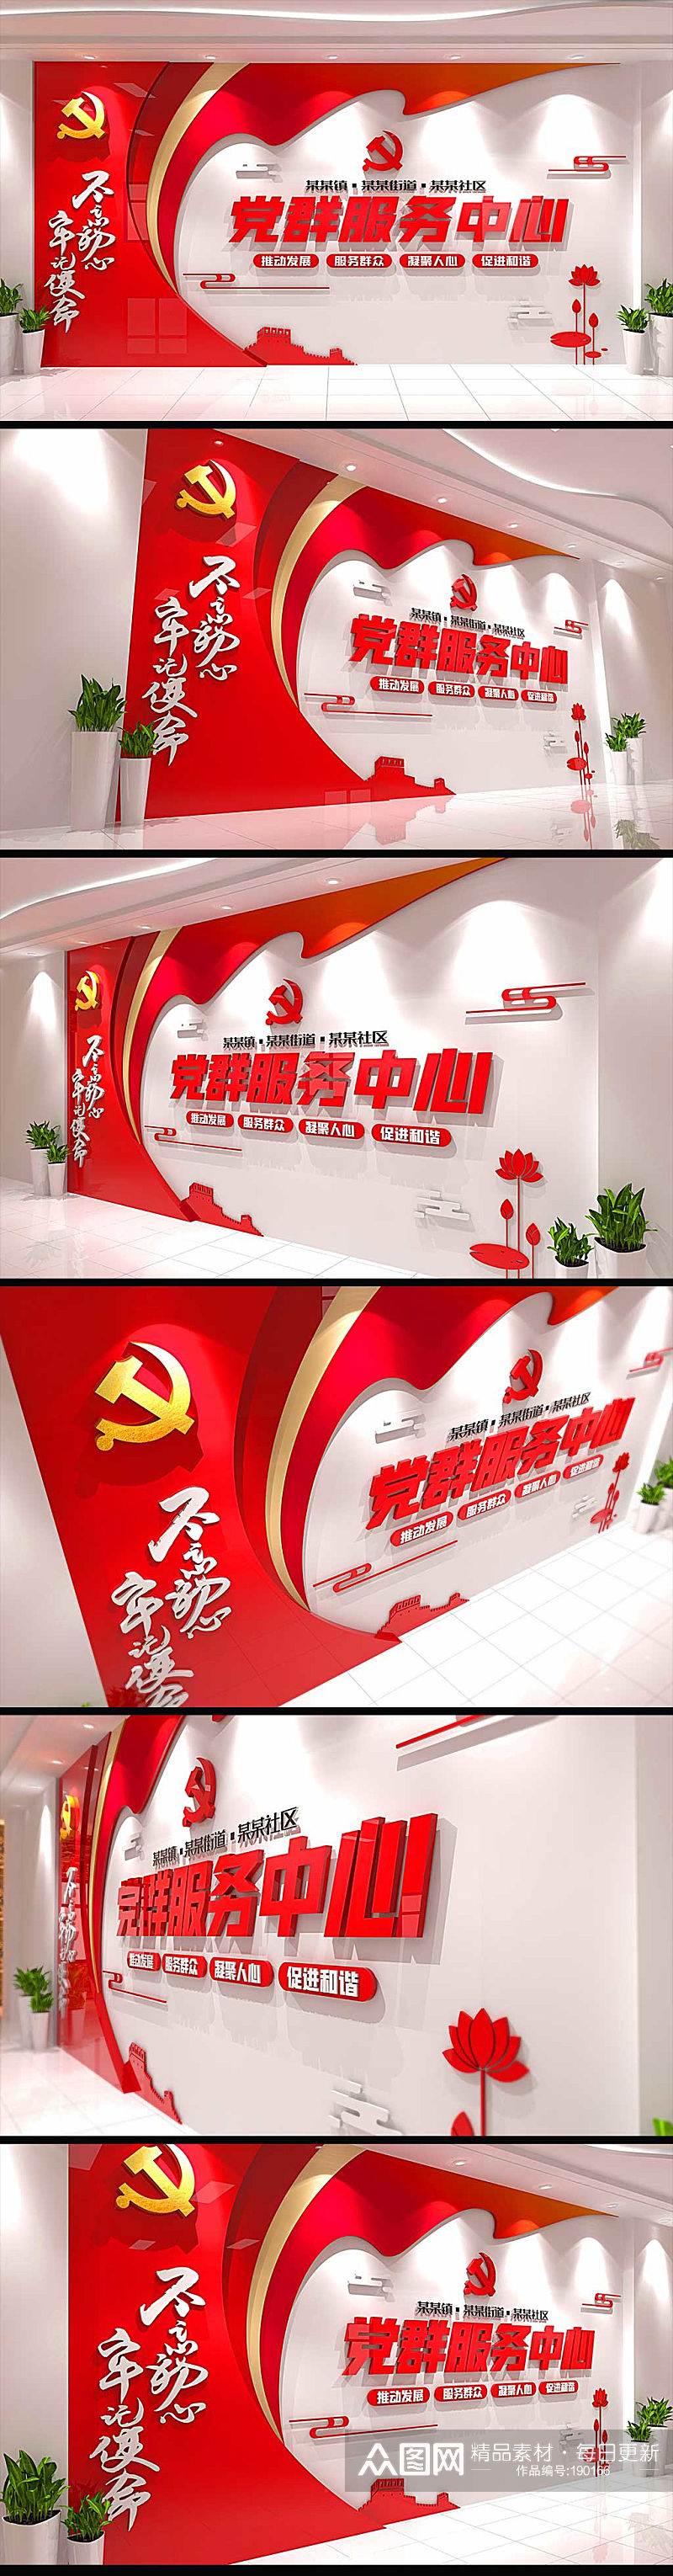 红色社区党群服务中心文化墙素材